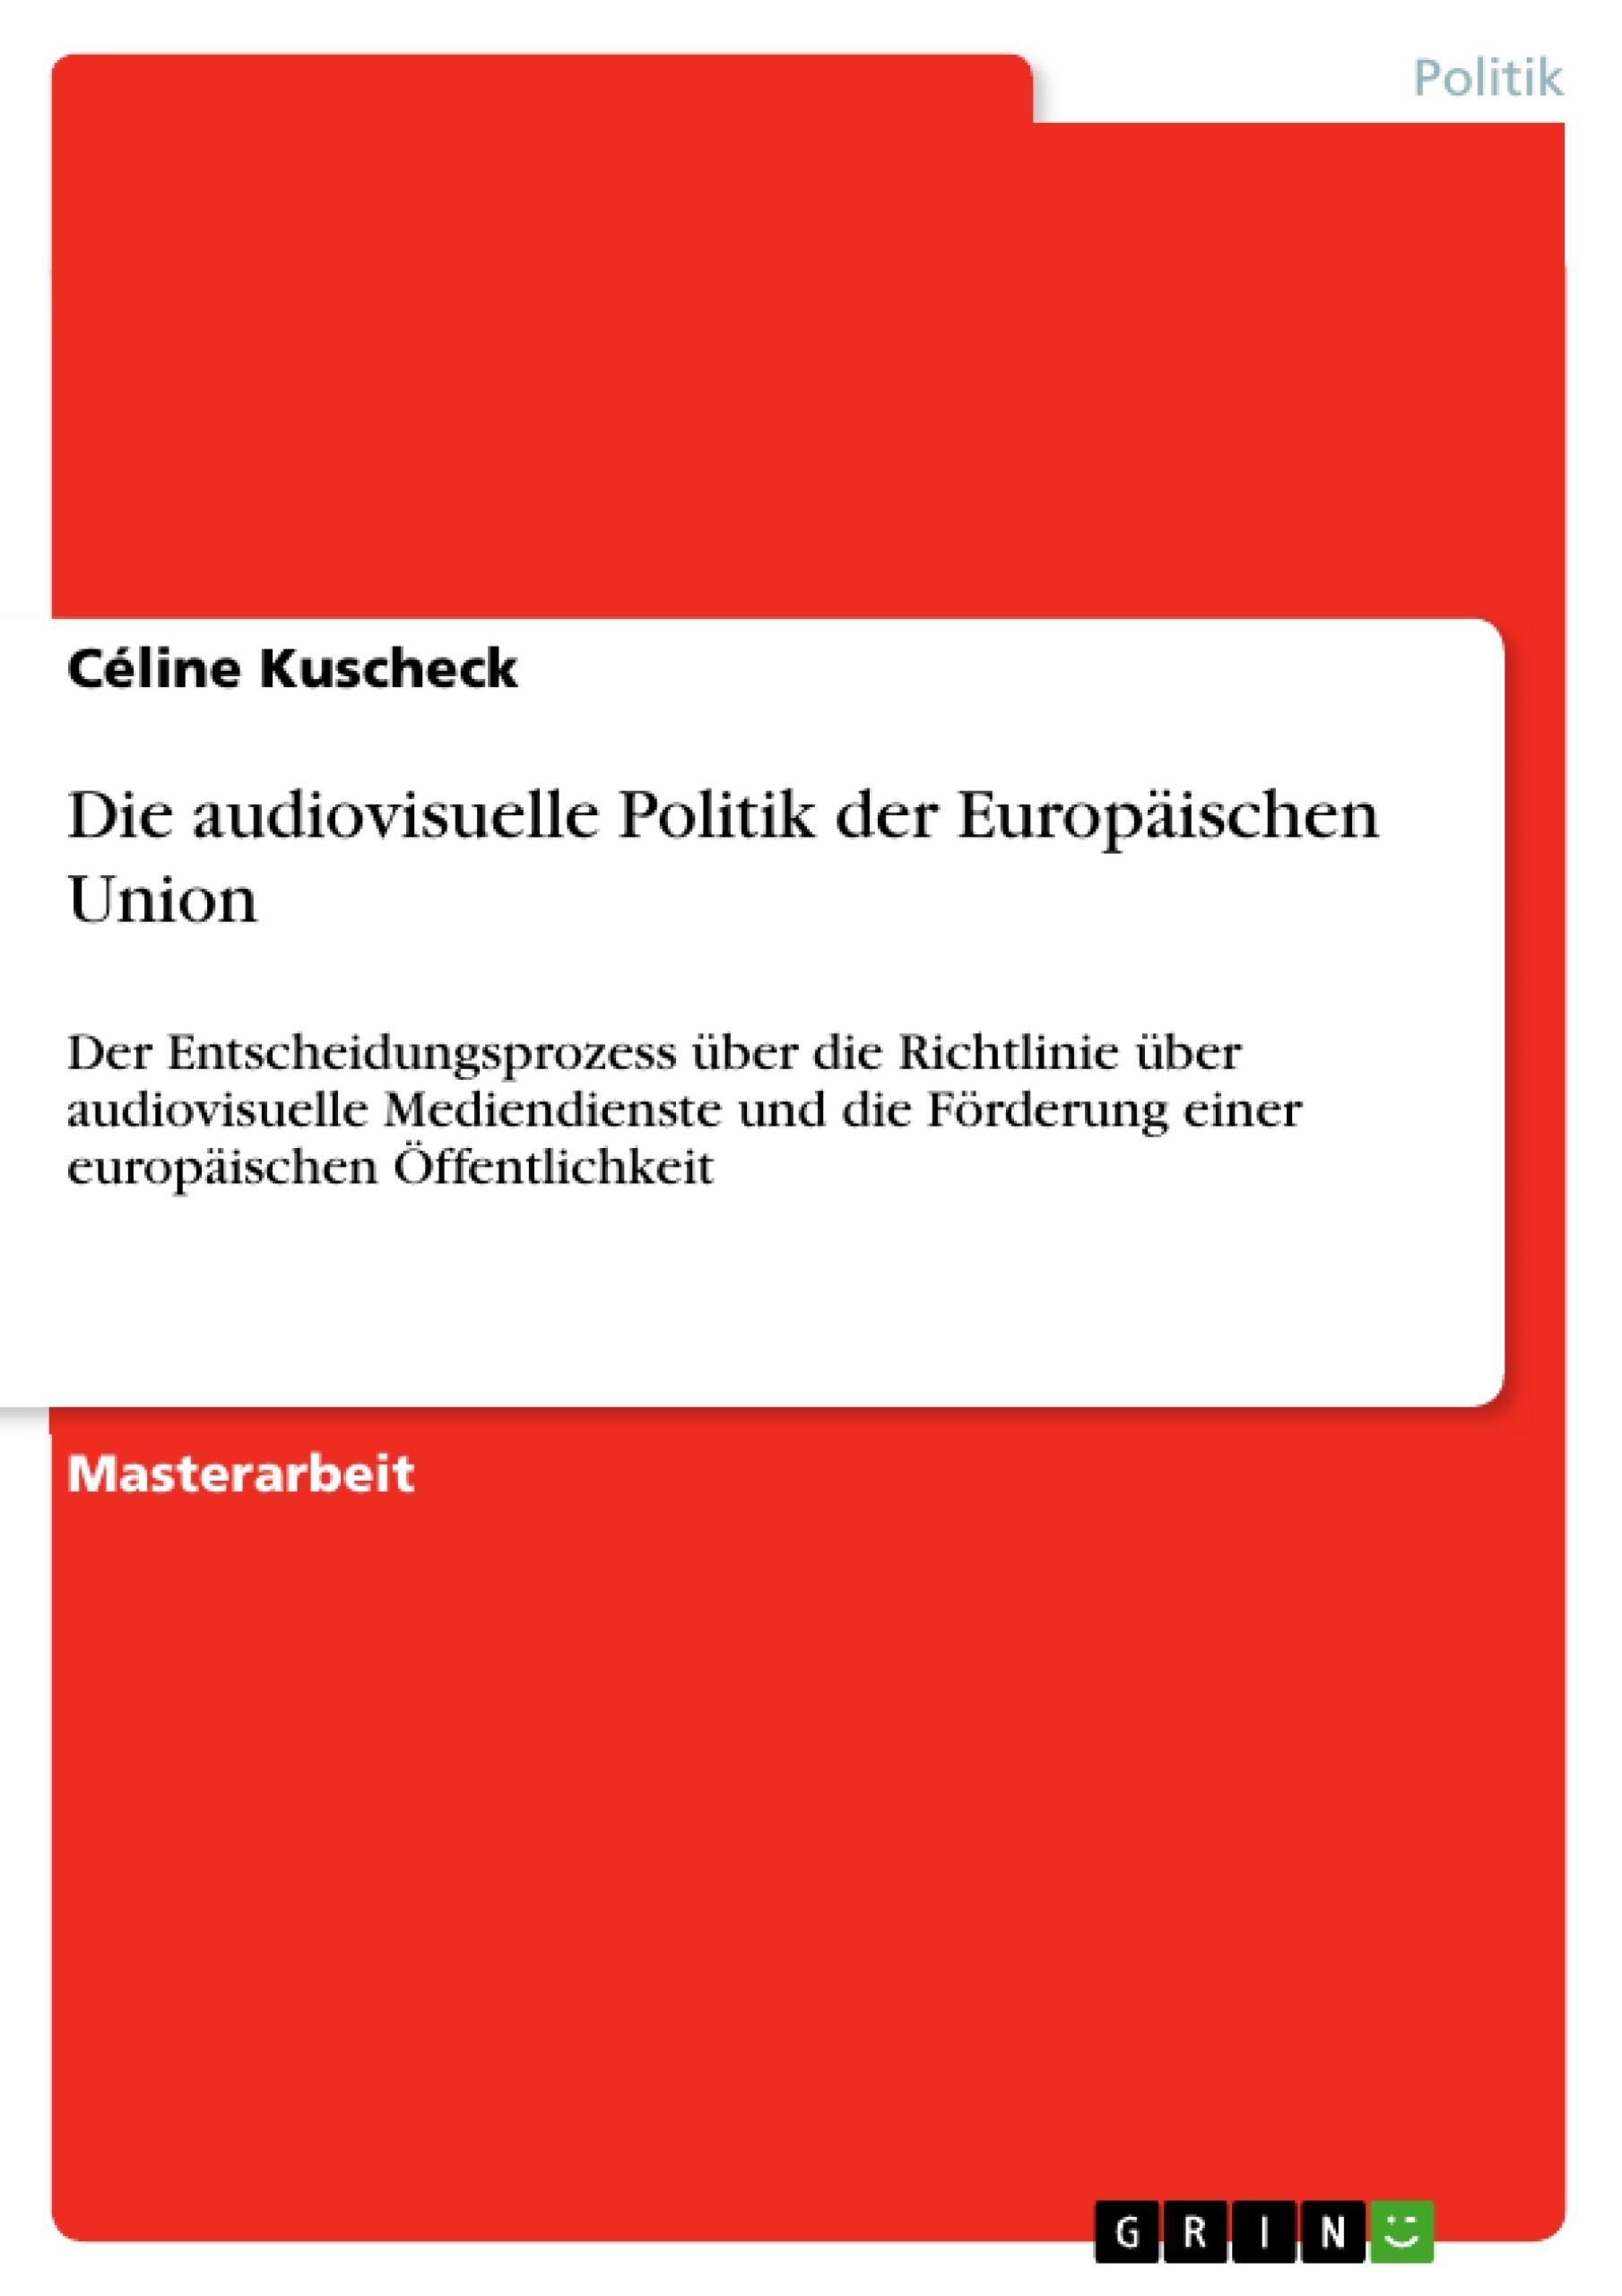 Título: Die audiovisuelle Politik der Europäischen Union